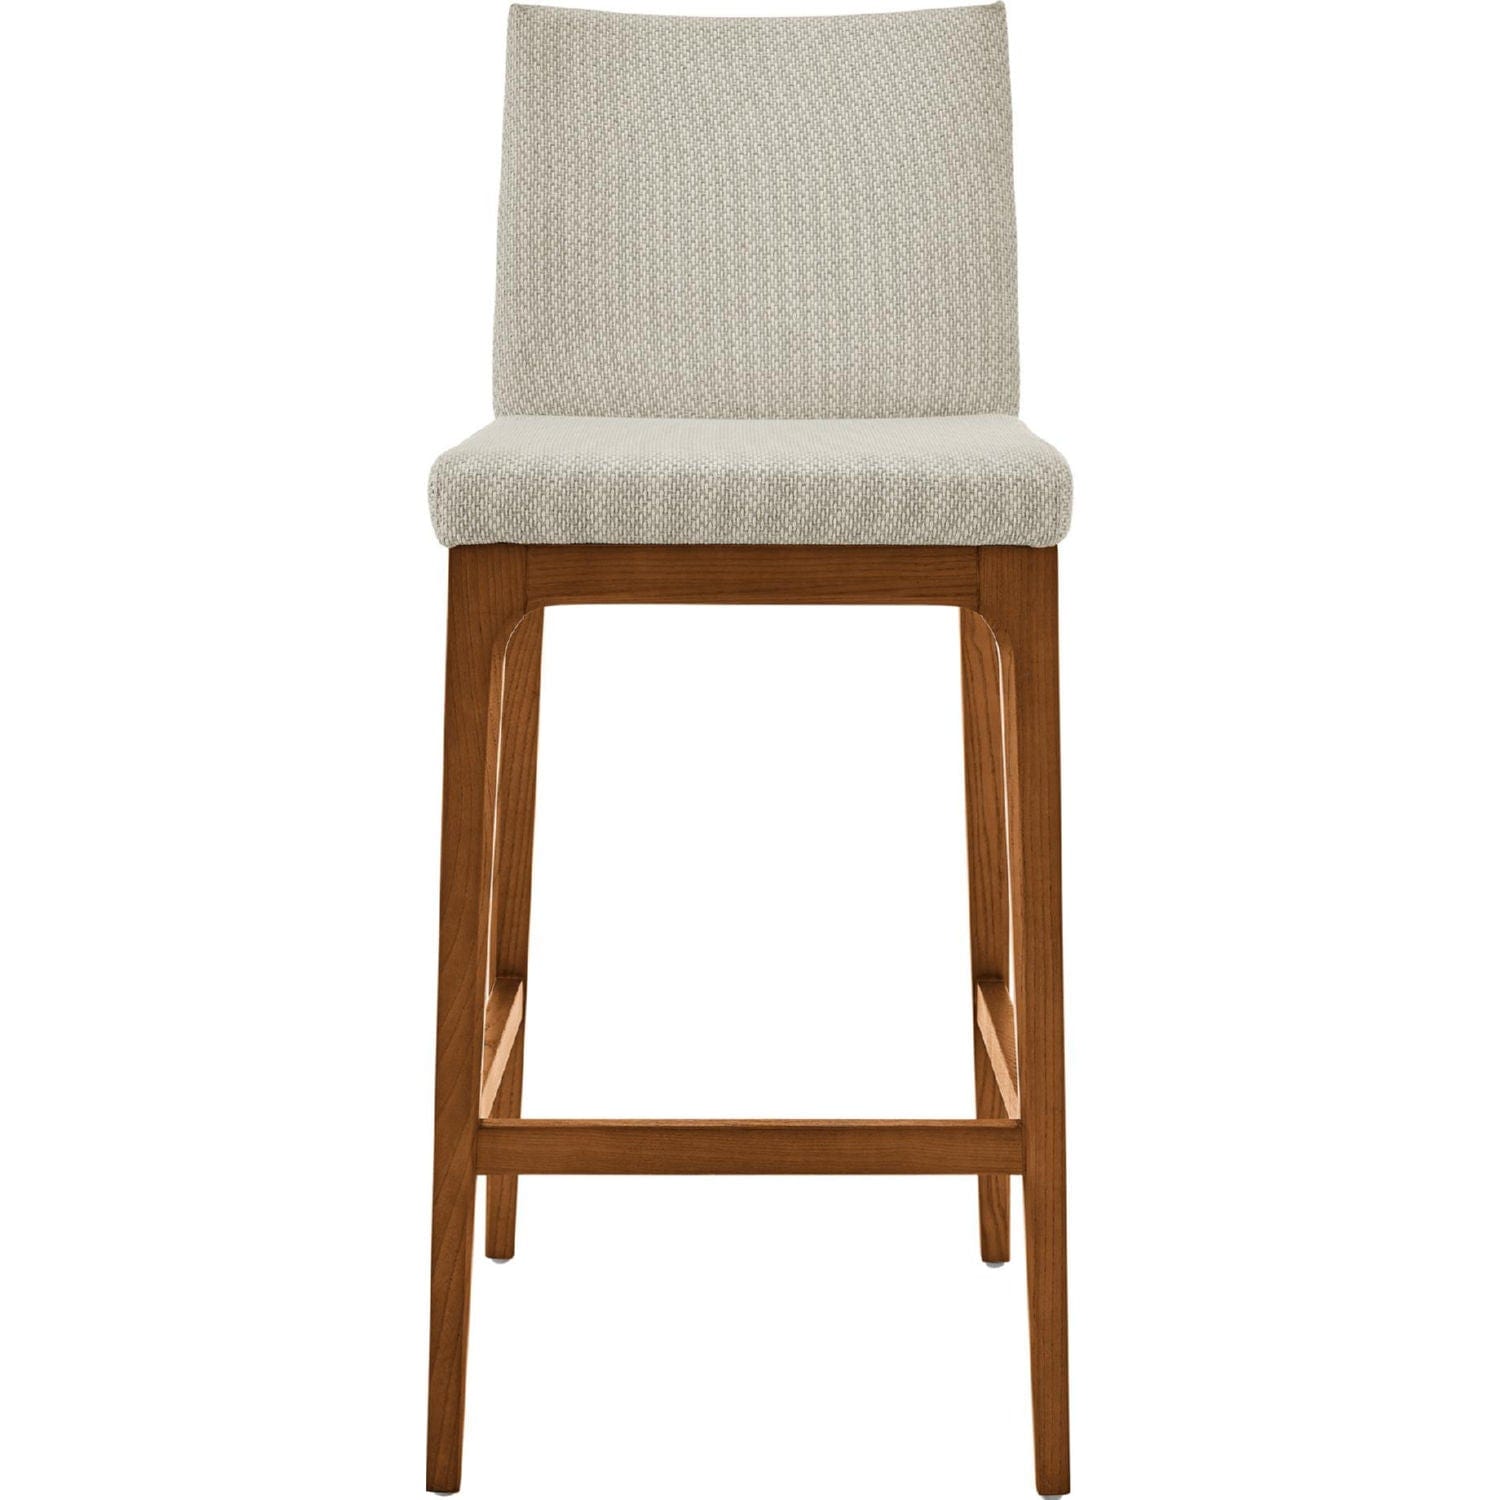 NPD Furniture NPD - Devon KD Fabric Dining Side Chair Walnut Legs, Cardiff
Cream | 4400061-276